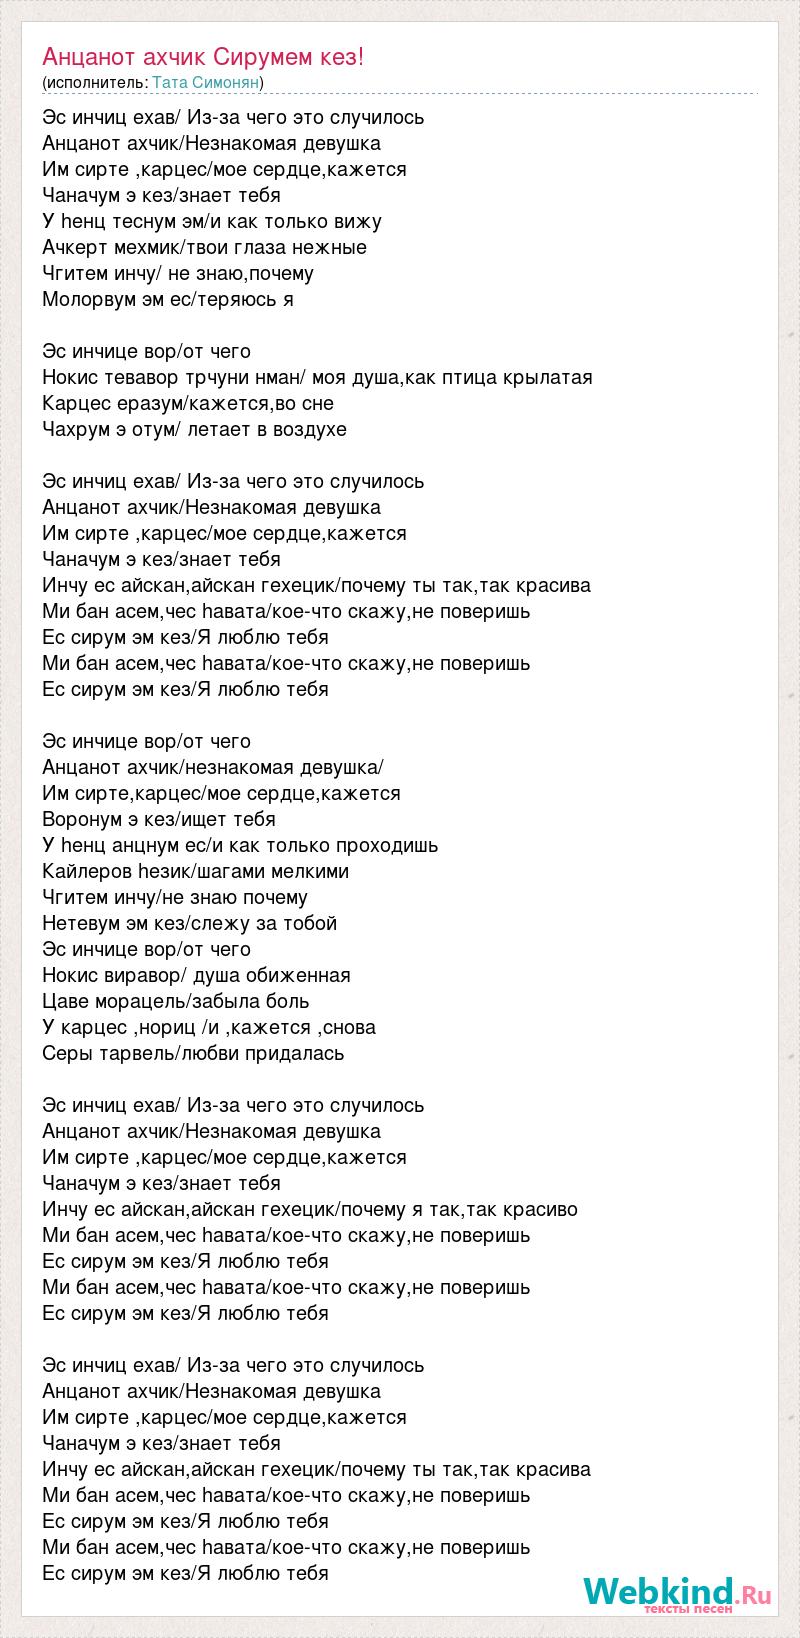 Текст песни Тата Симонян - фаэтон